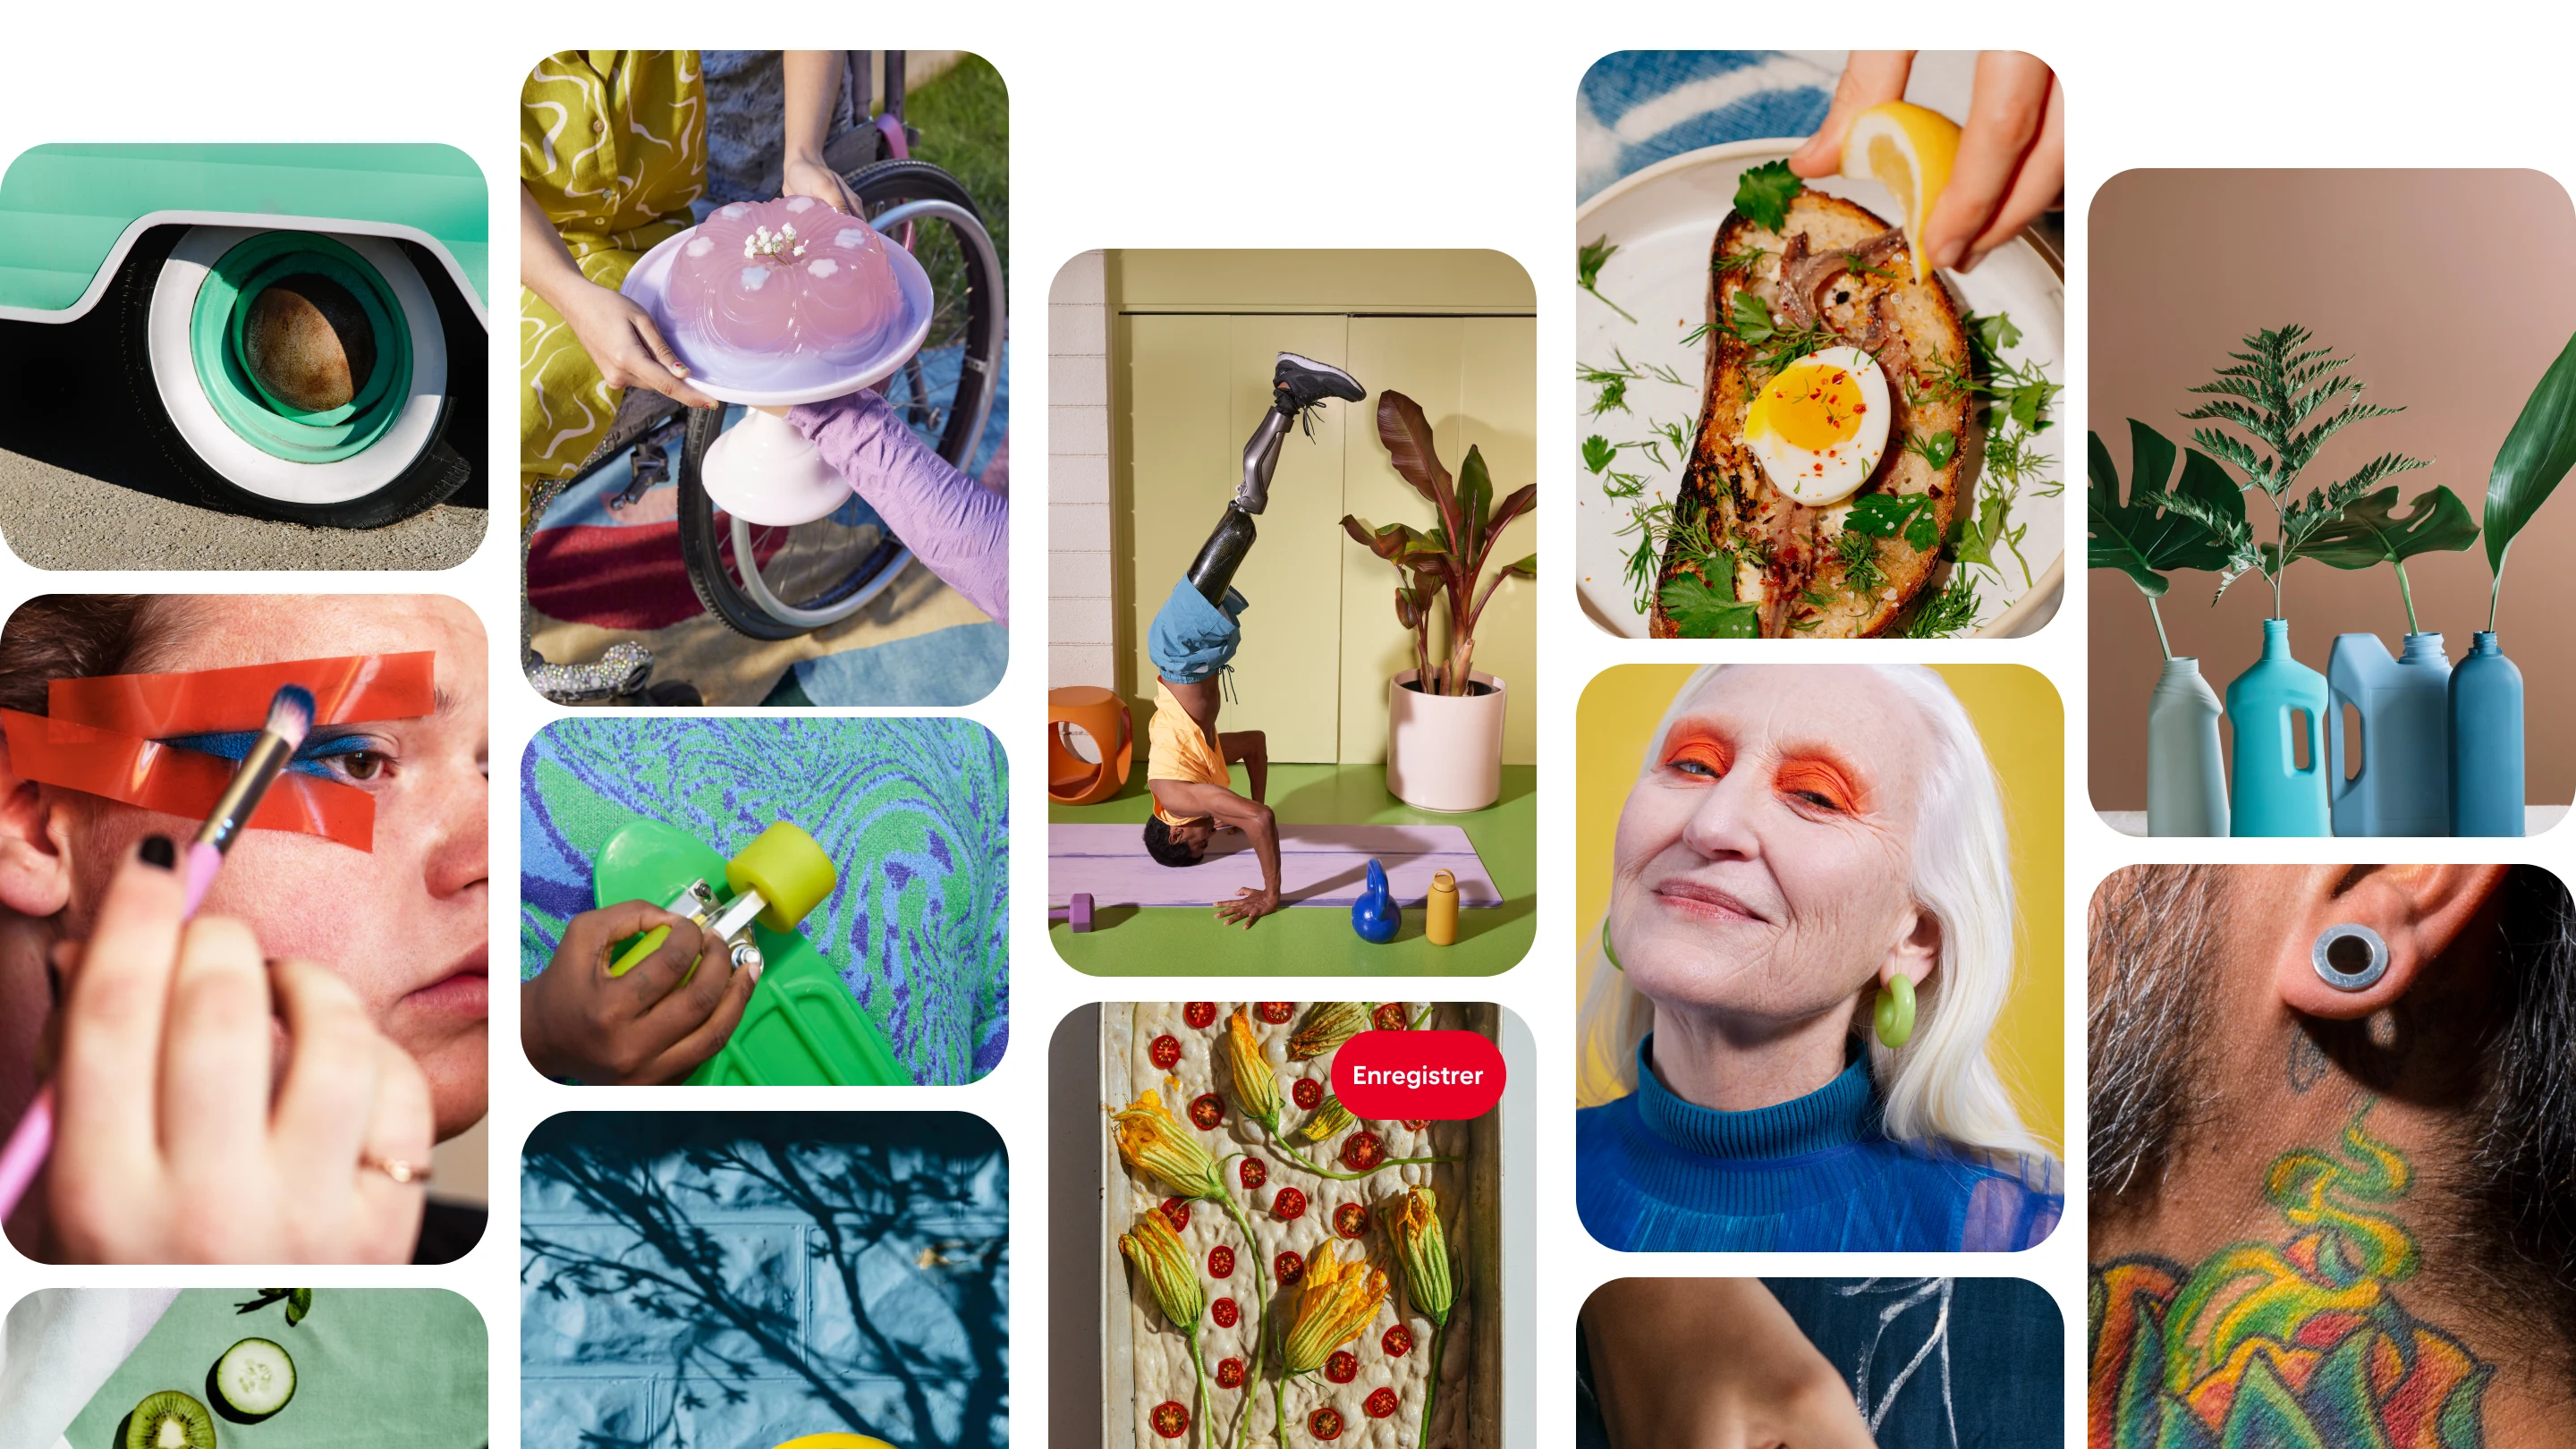 Un collage d’Épingles variées sur Pinterest, sur lesquelles l’on peut voir un maquillage coloré, une personne faisant une pose de yoga ou encore des idées de plats.